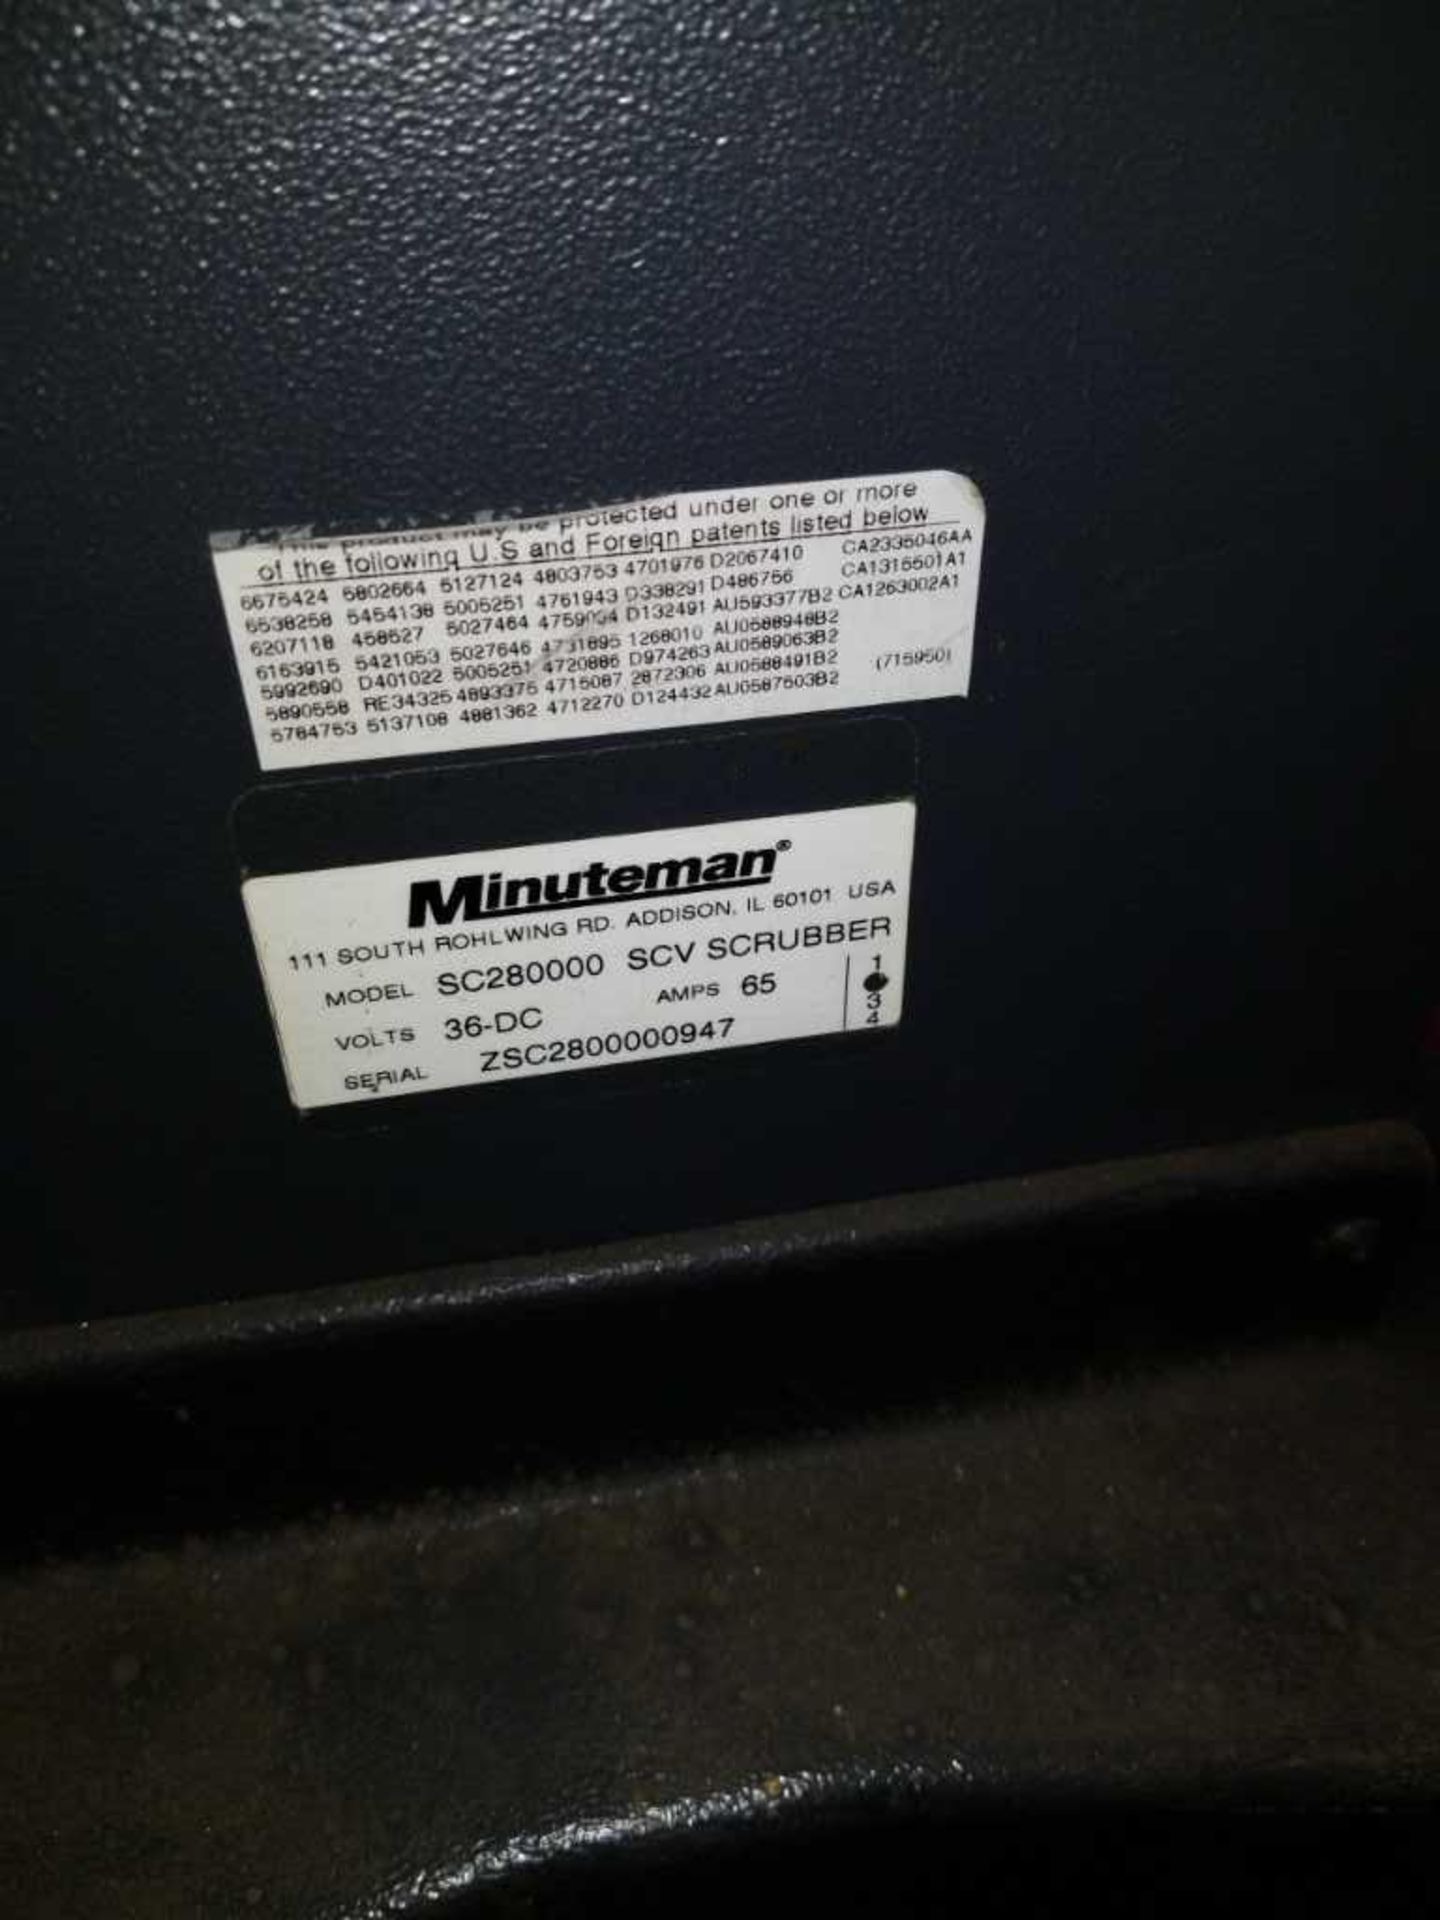 Minutemen SC 28000 Electric Floor Scrubber. Serial ZSC2800000947 - Image 4 of 4